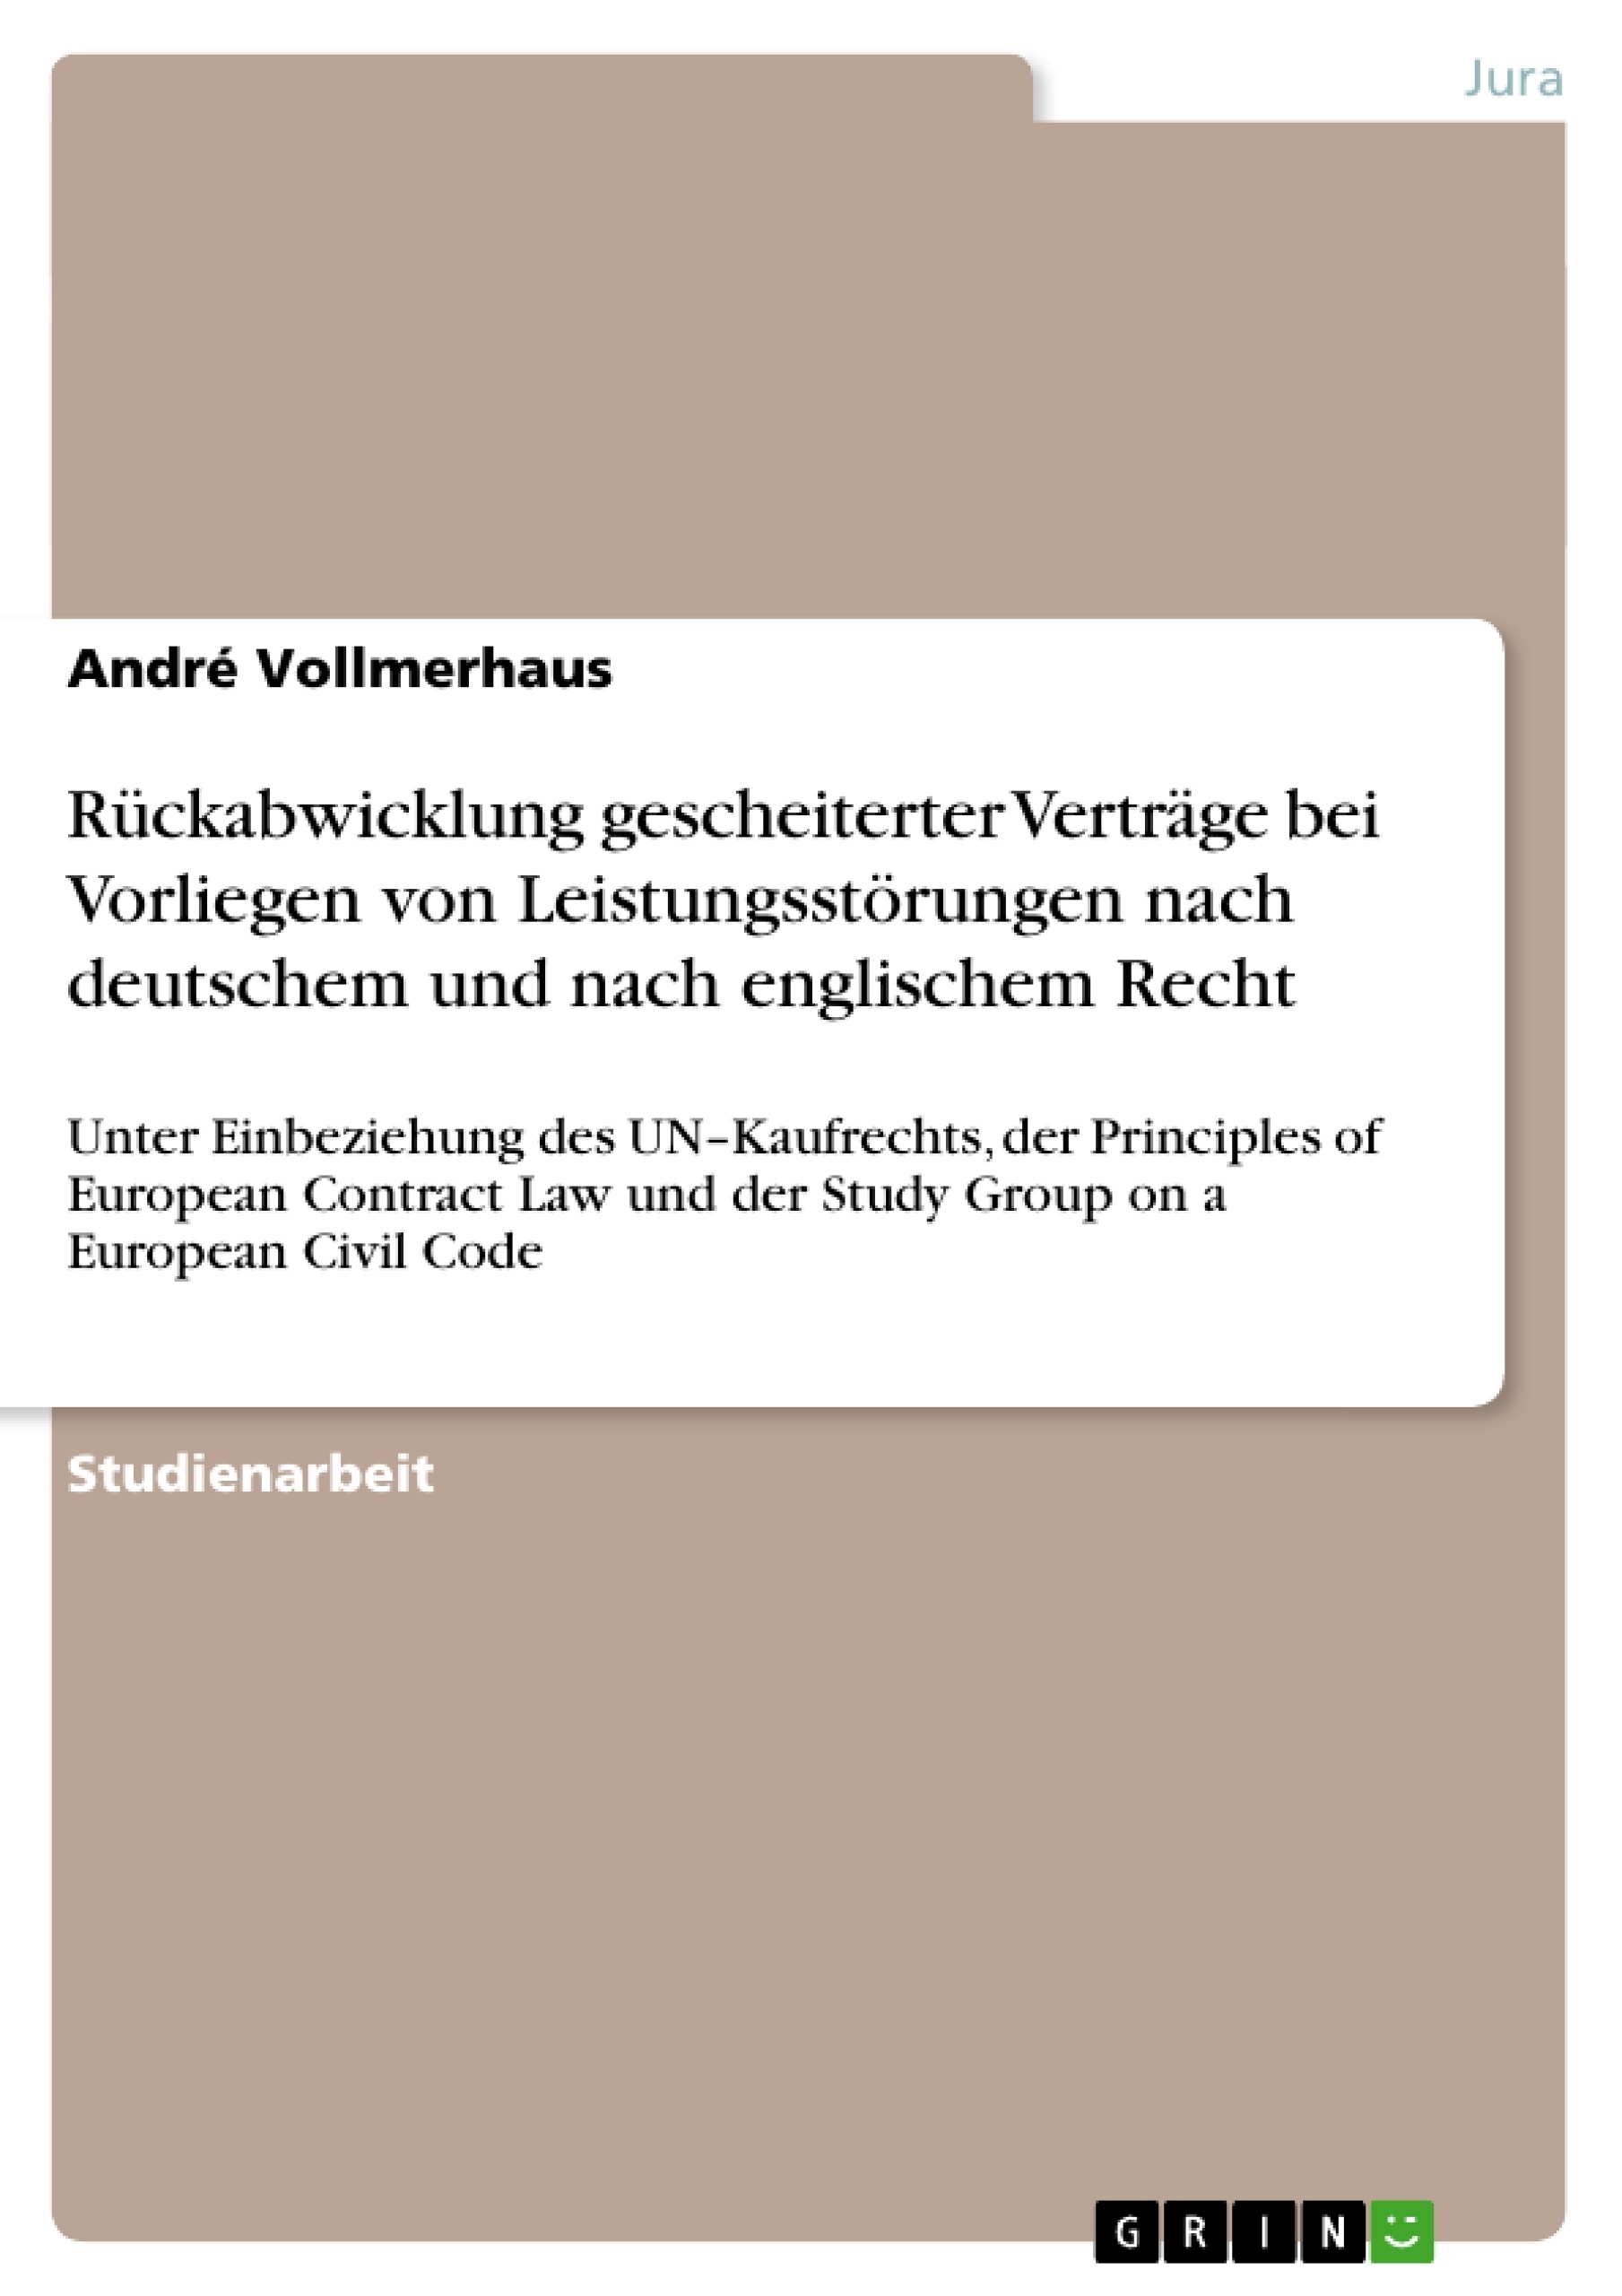 Title: Rückabwicklung gescheiterter Verträge bei Vorliegen von Leistungsstörungen nach deutschem und nach englischem Recht